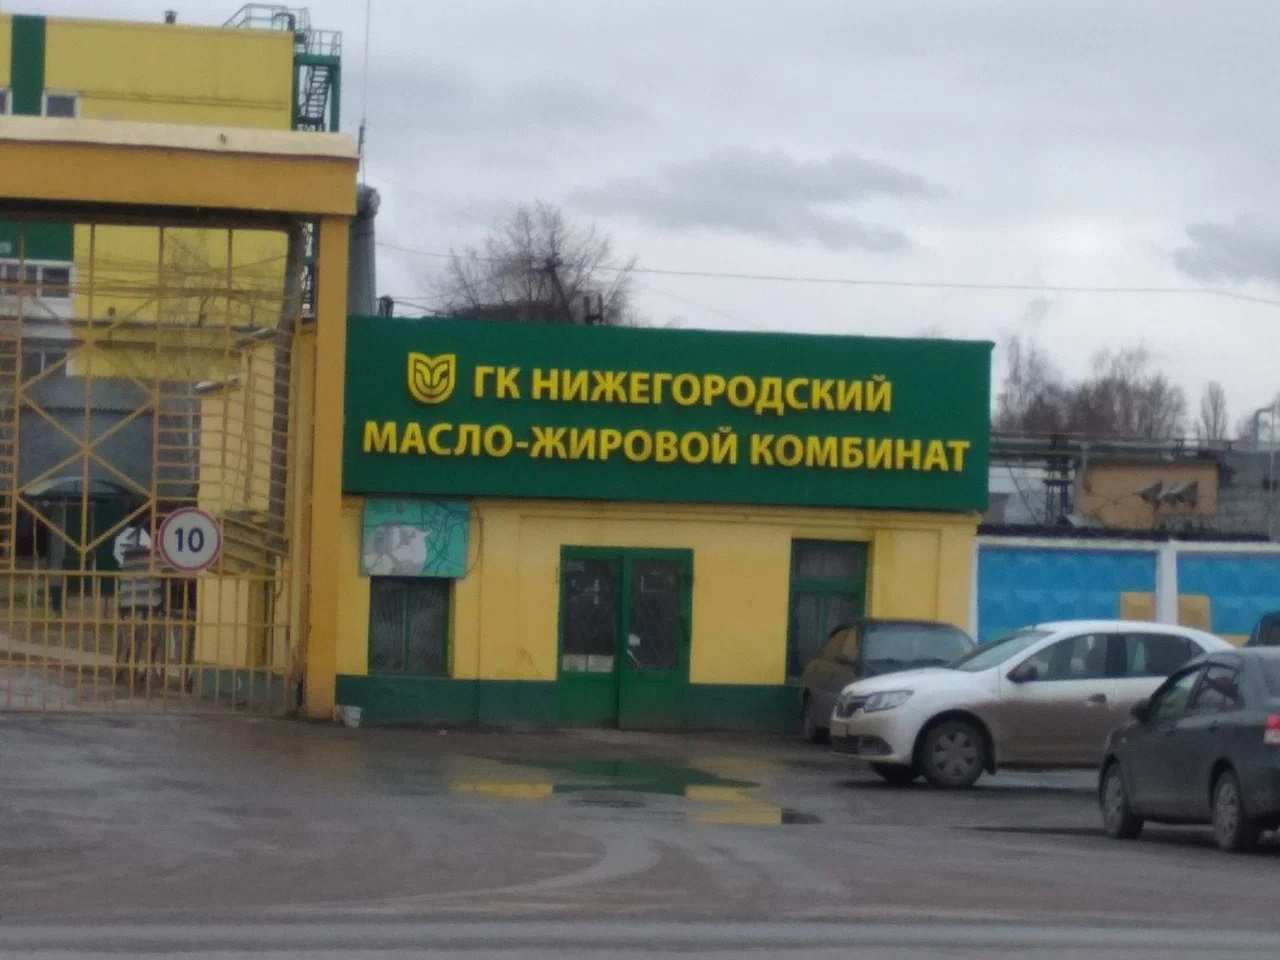 «Русагро» закрыла сделку по покупке 50% акций Нижегородского масло-жирового комбината